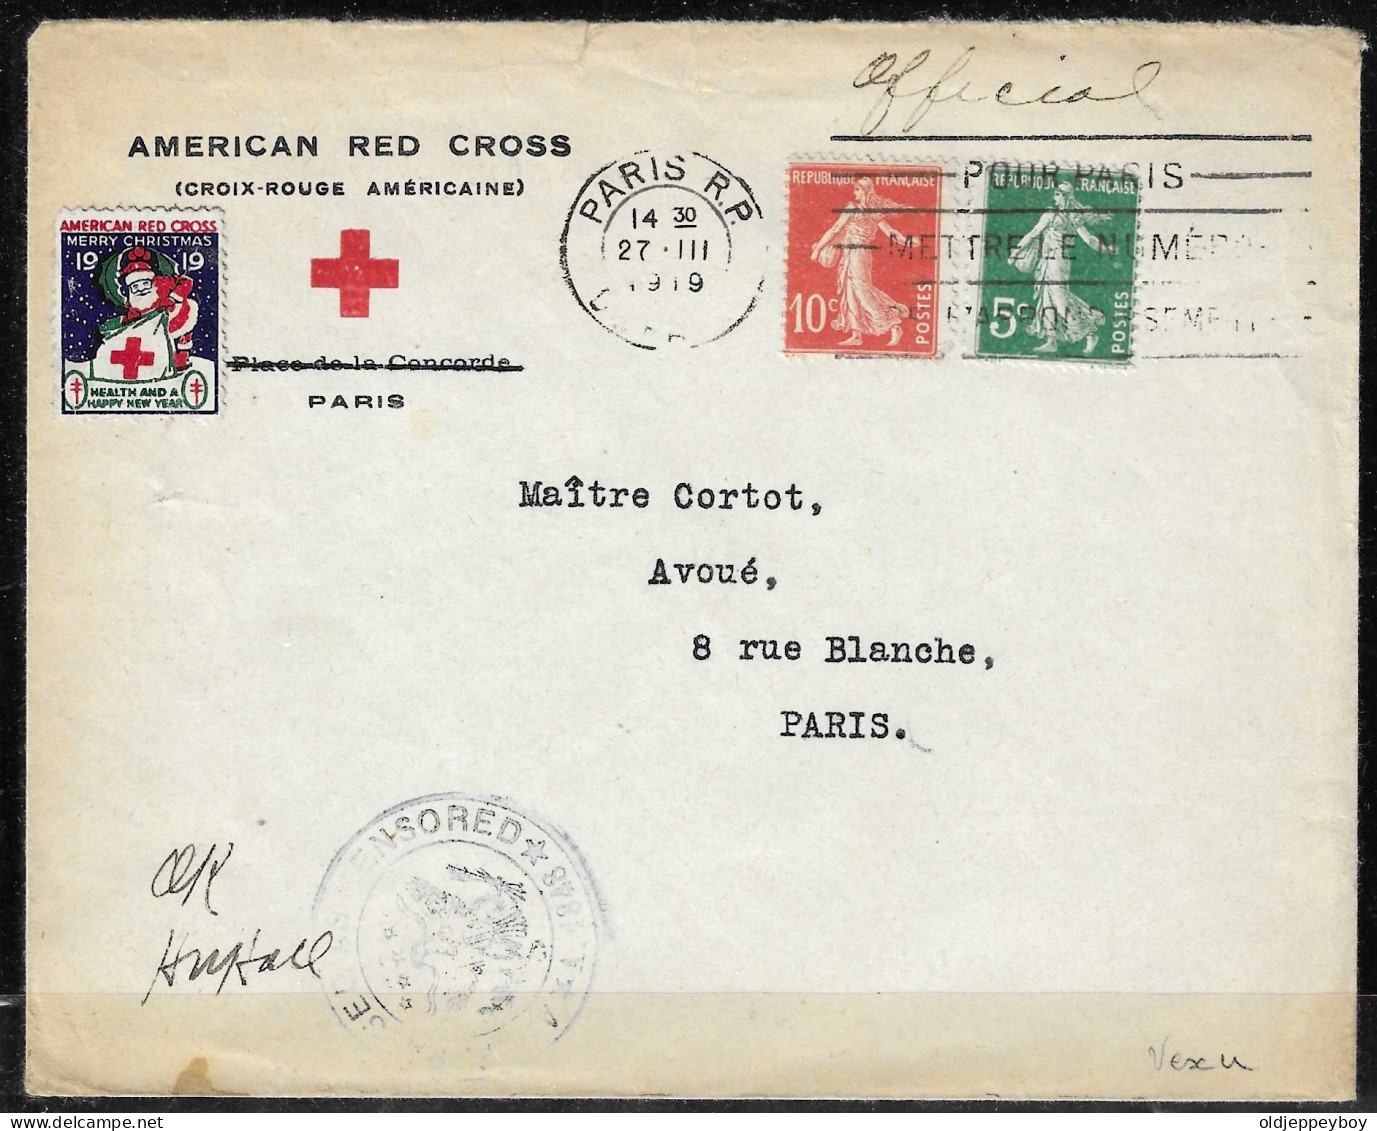 COVER France N°130, 131 Sur Enveloppe De L'American Red Cross 27.3.1919  CROIX ROUGE VIGNETTE VIGNETTEN W/ CENSOR CANCEL - Red Cross